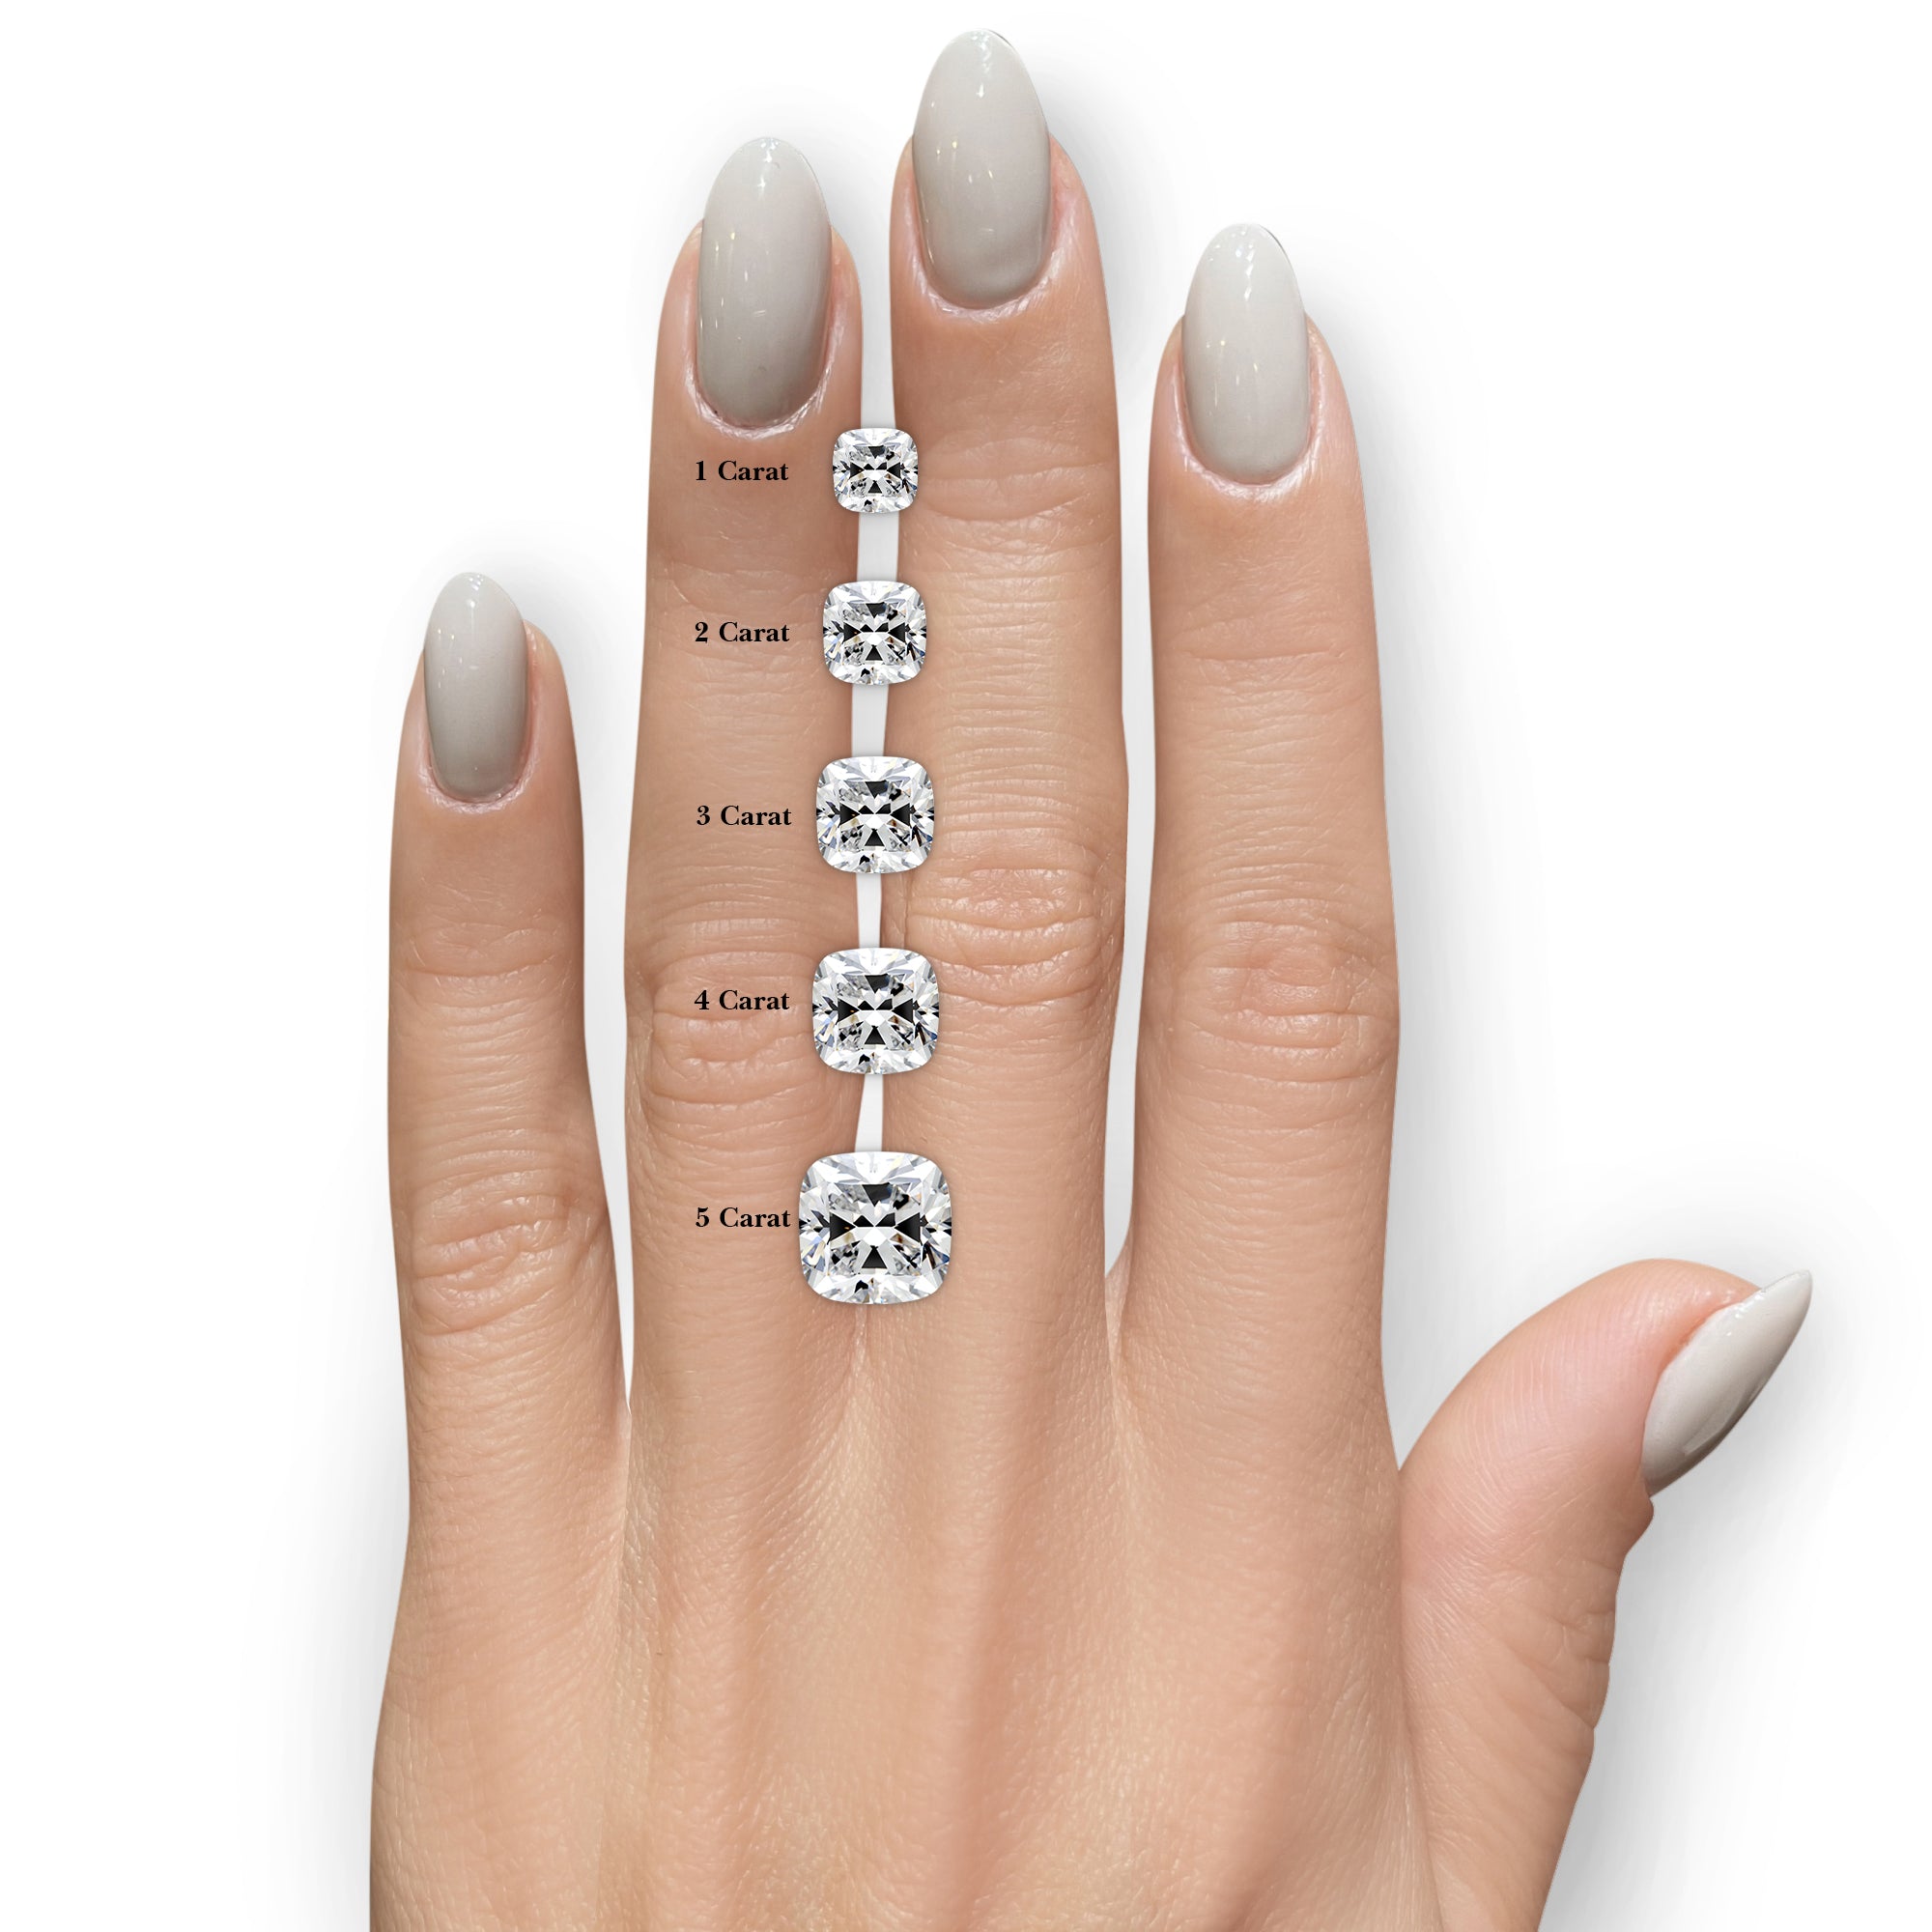 Annabelle Moissanite & Diamonds Ring -14K White Gold